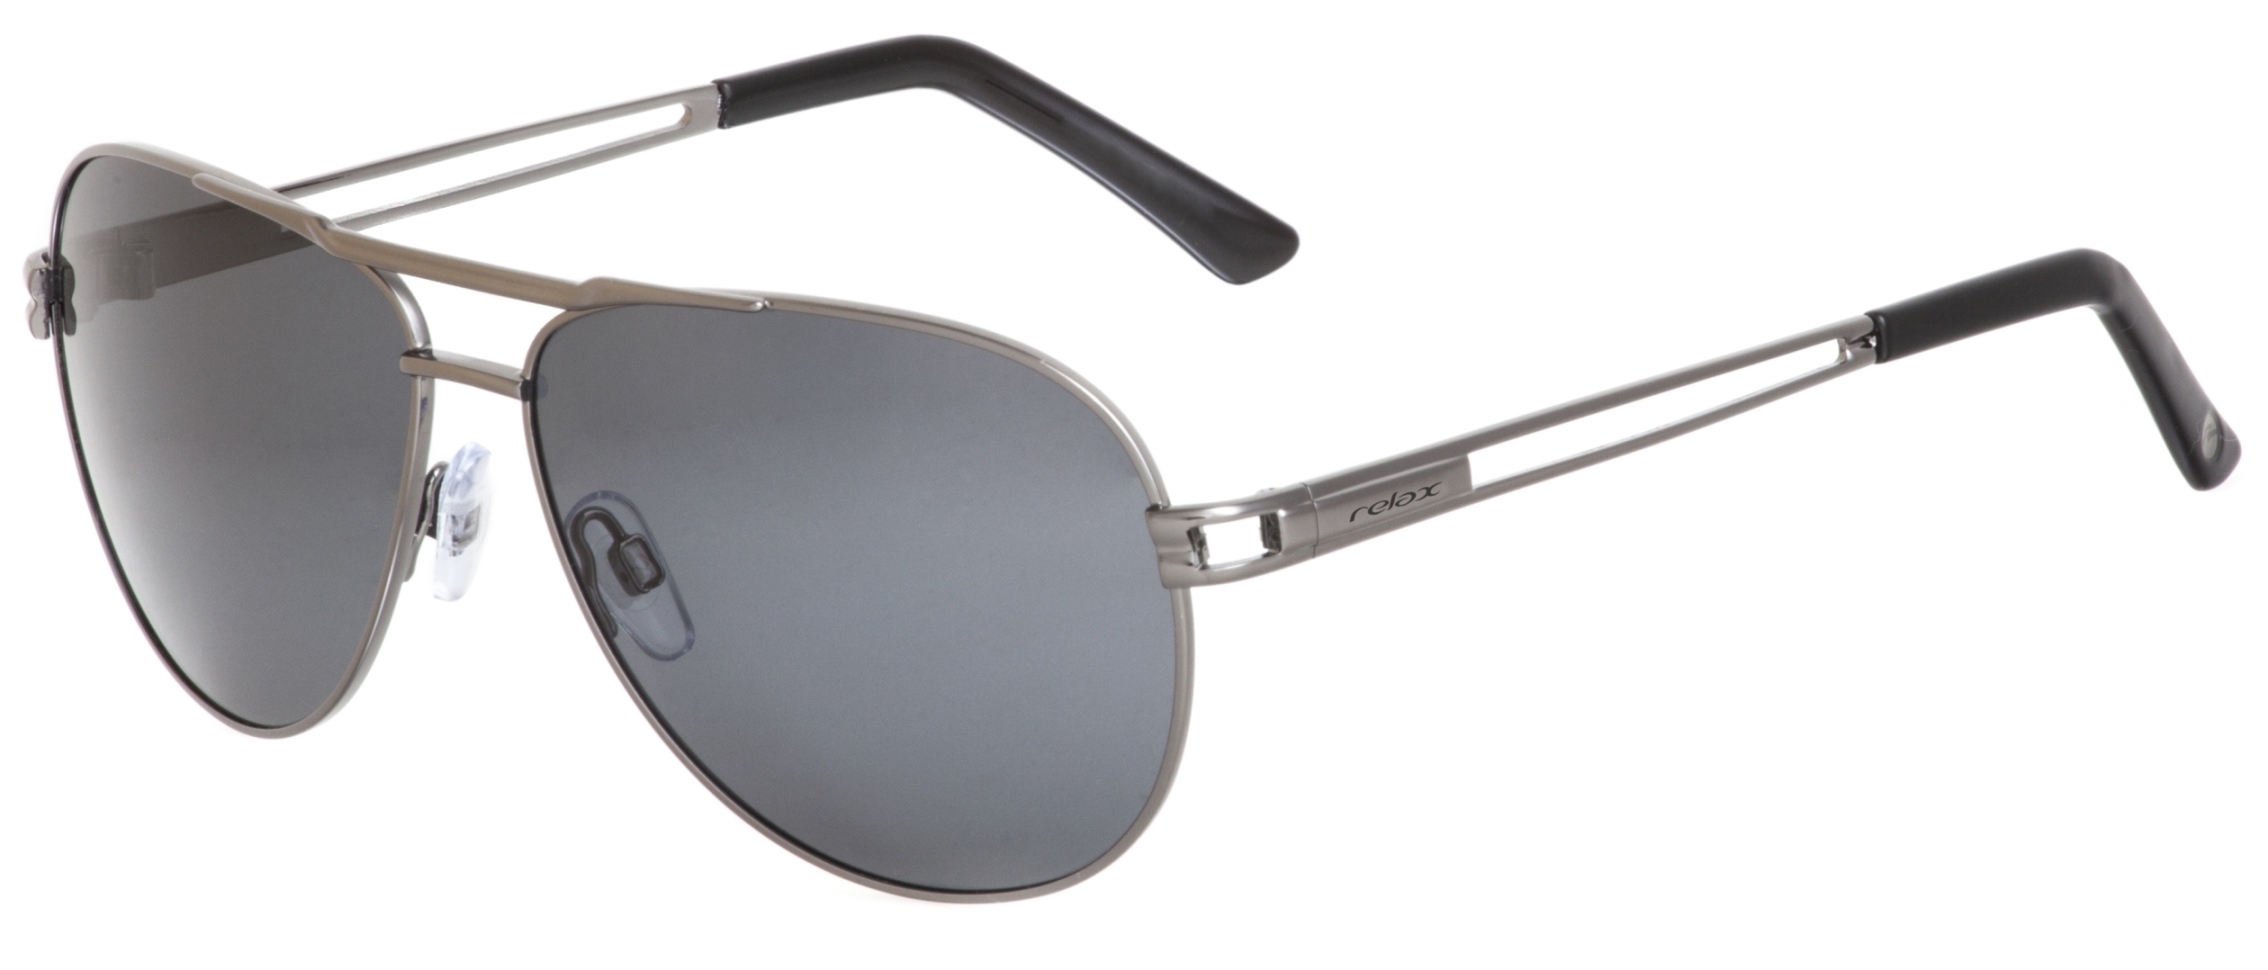 Polarized sunglasses  Relax Condore R2288B